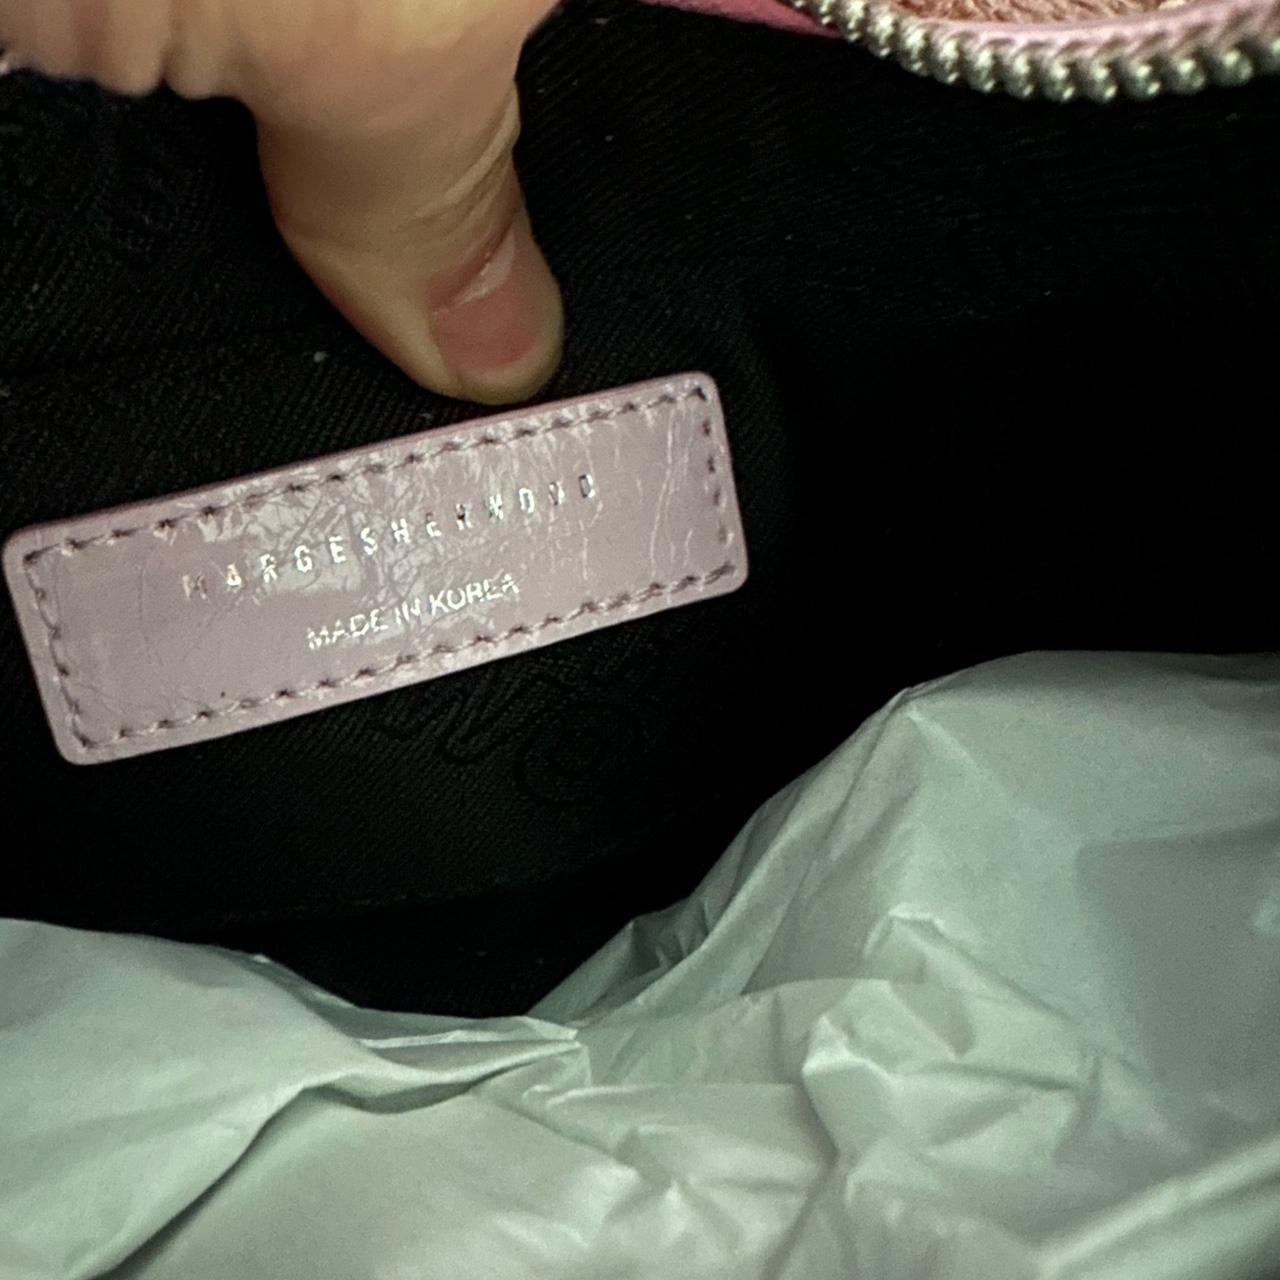 Marge Sherwood Pink Mini Crinkle Shoulder Bag for Women